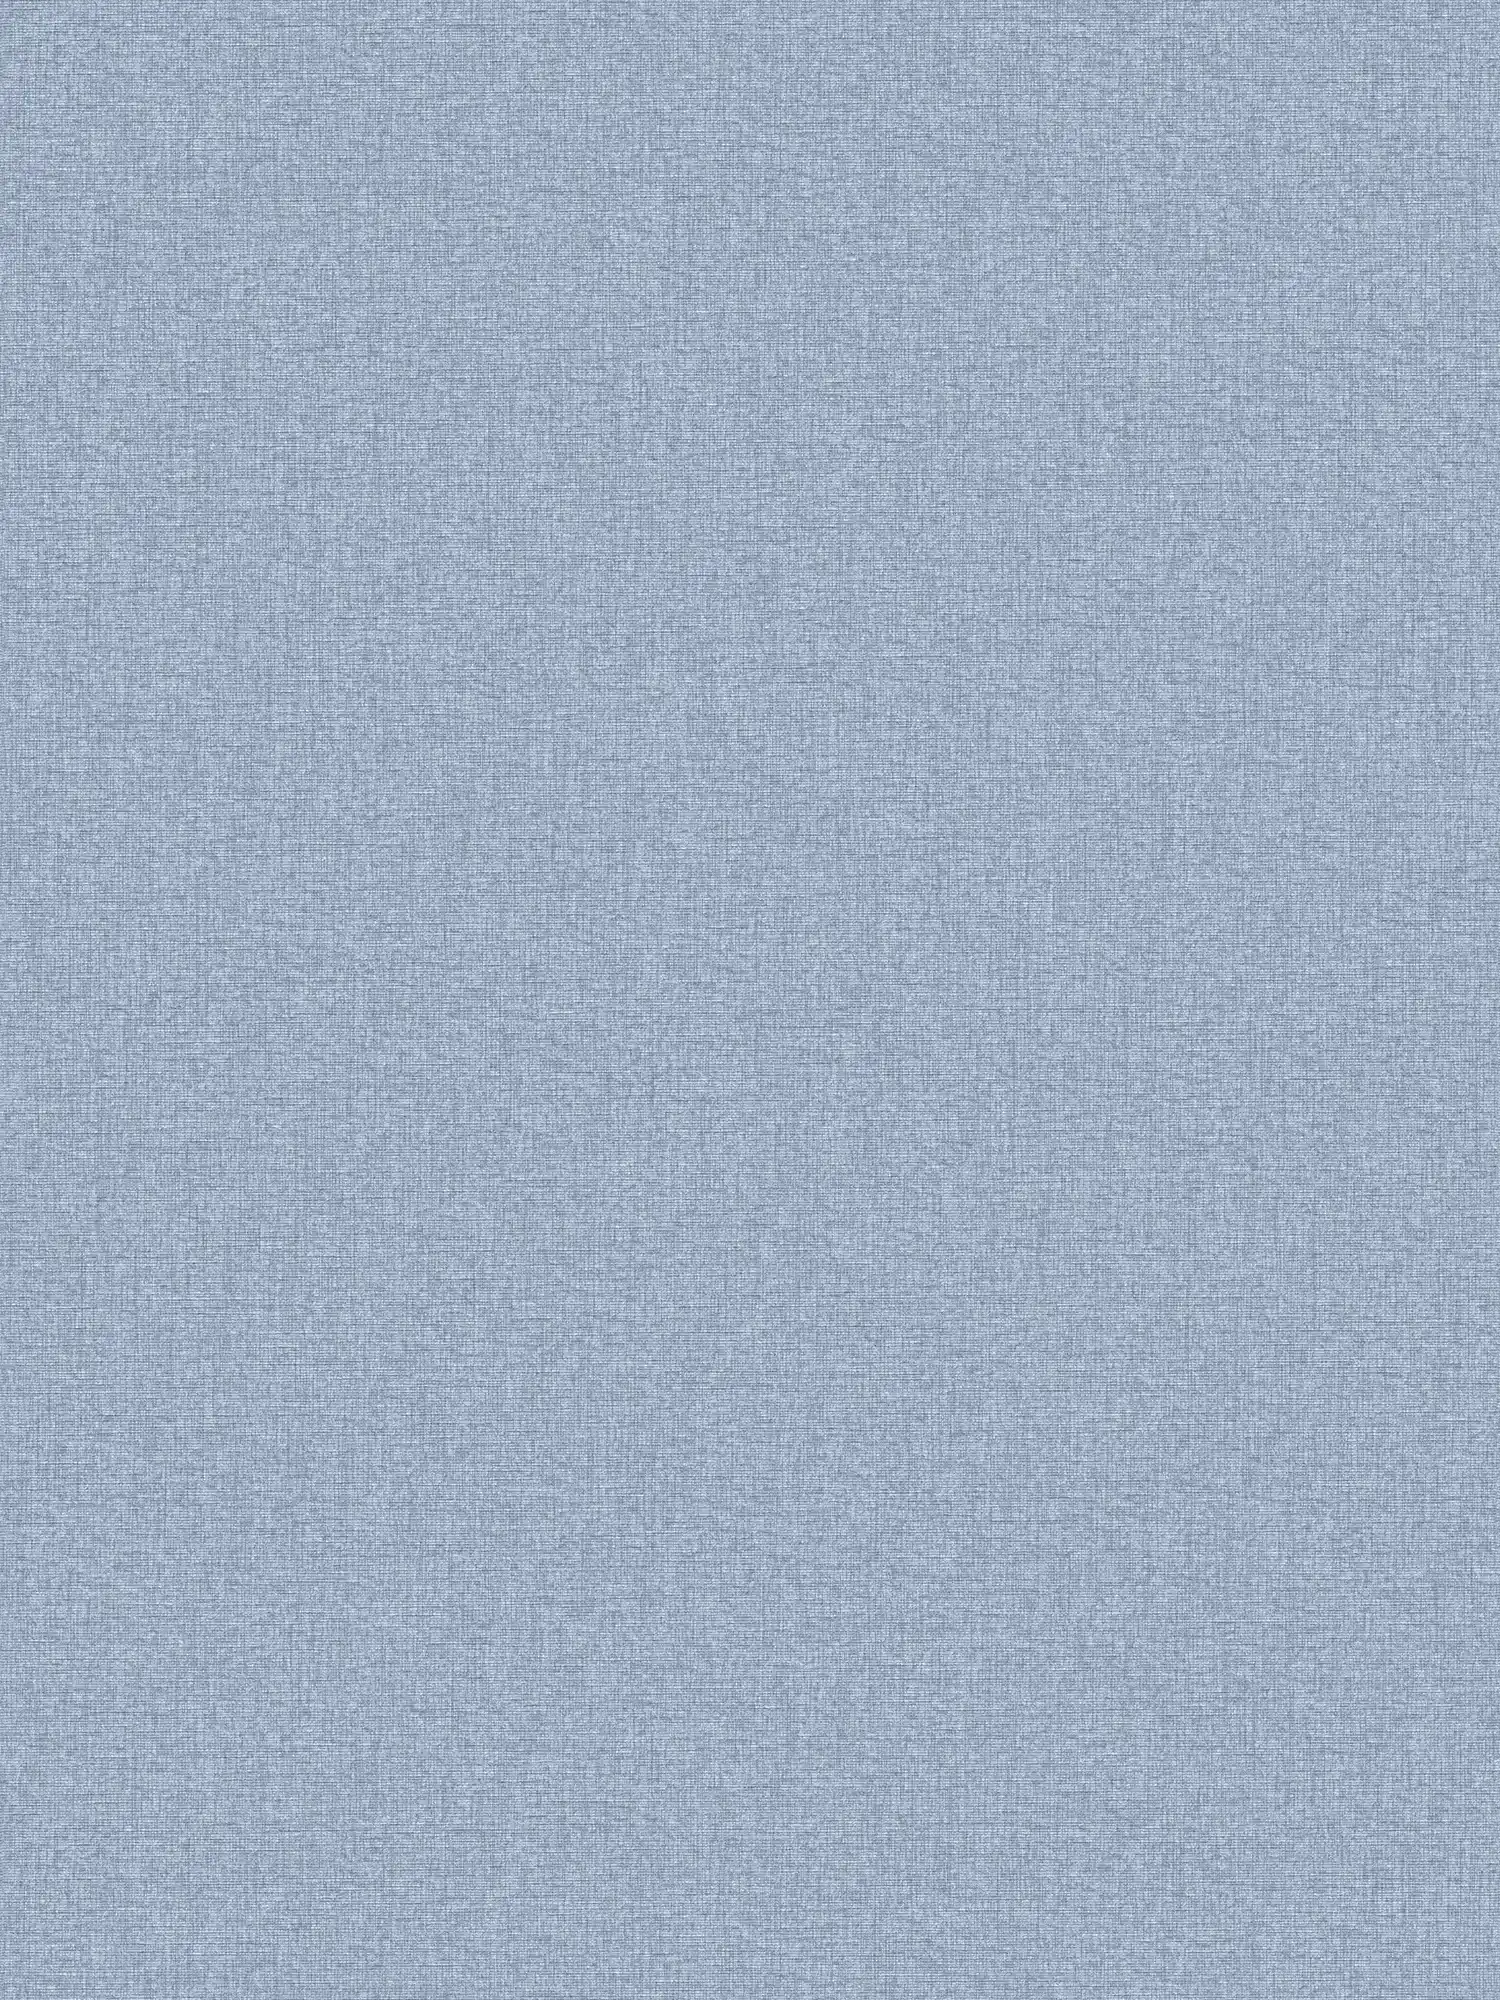 Einfarbige Vliestapete in Textil-Optik mit leichter Struktur, matt – Blau
